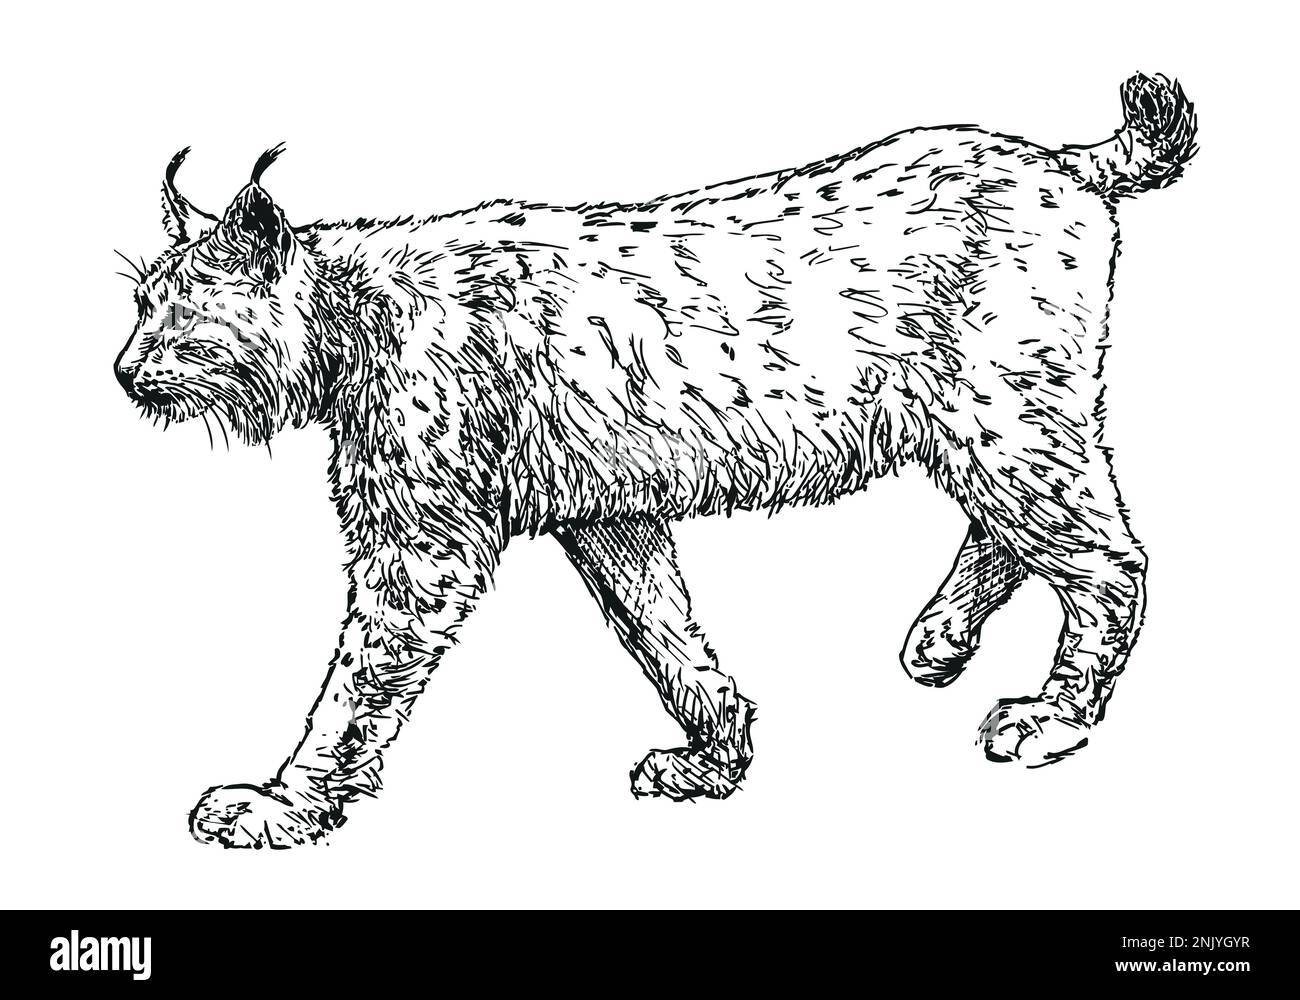 lynx - feline beast Eurasian lynx, hand drawn black and white vector illustration on white Stock Vector